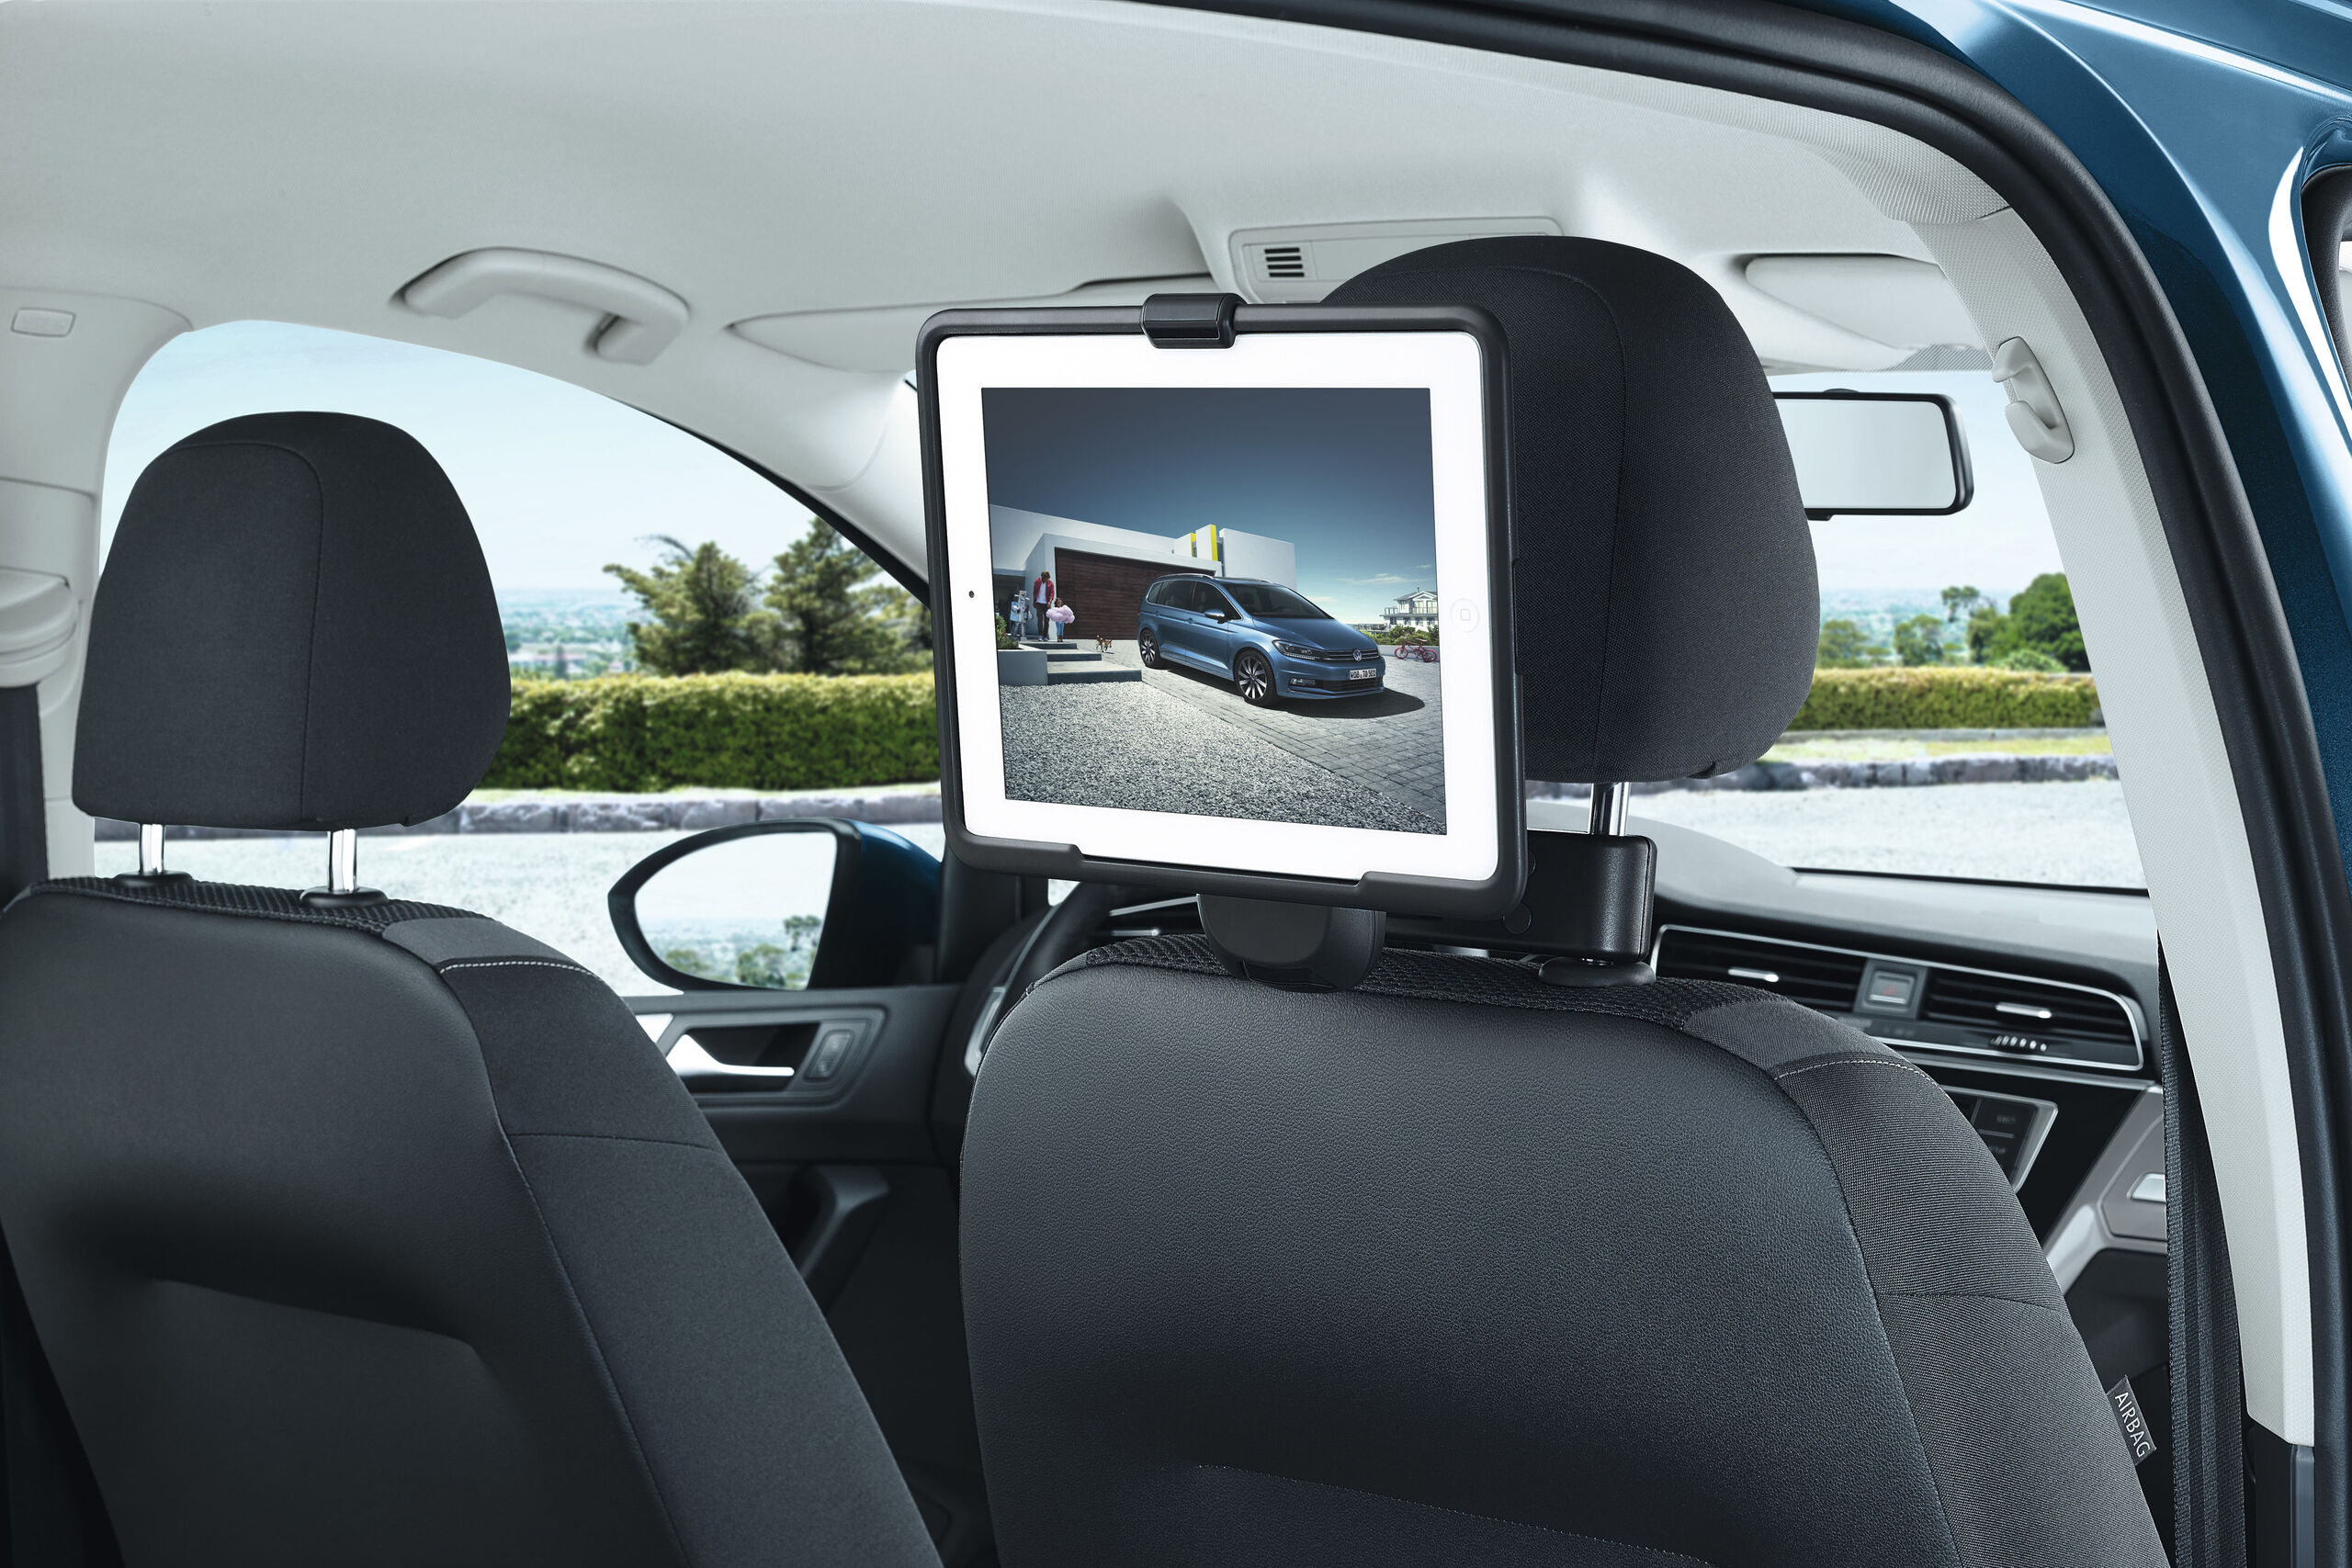 Ein iPad ist mithilfe des VW iPad Halters an der Kopfstütze des Beifahrersitzes befestigt